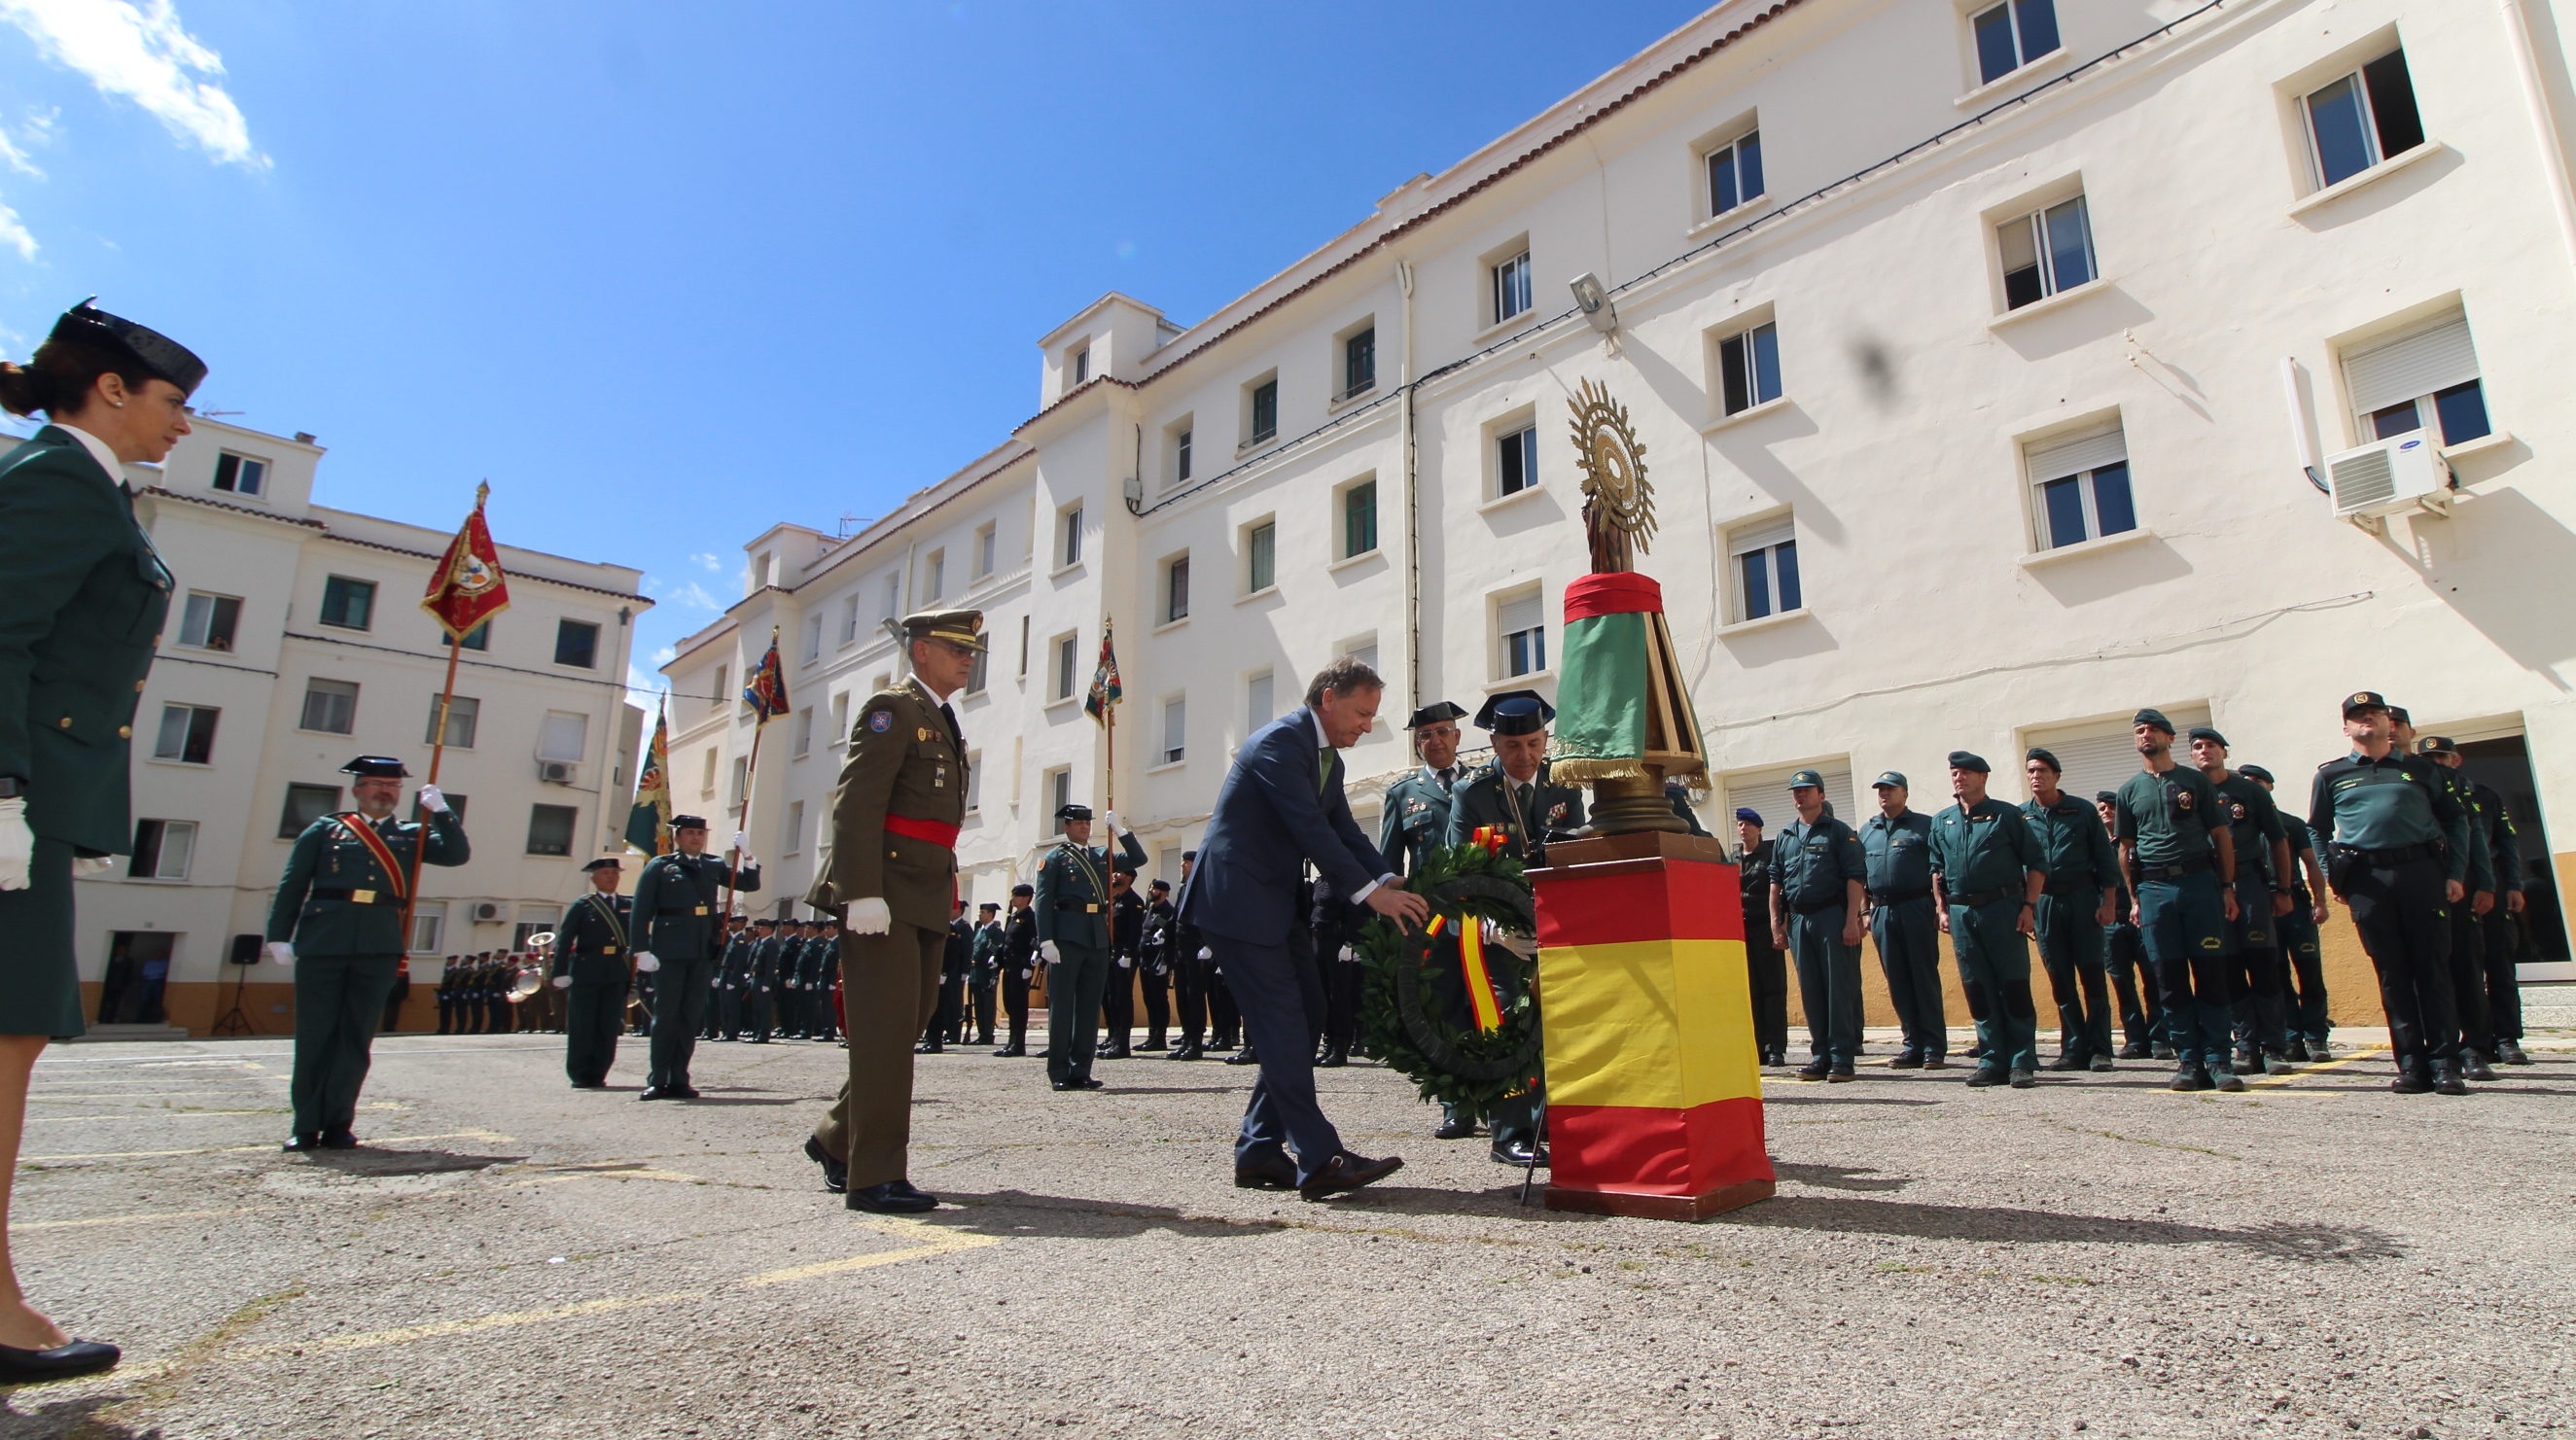 

Moragues destaca el prestigio y la proyección internacional de la Guardia Civil asesorando a policías de otros países
